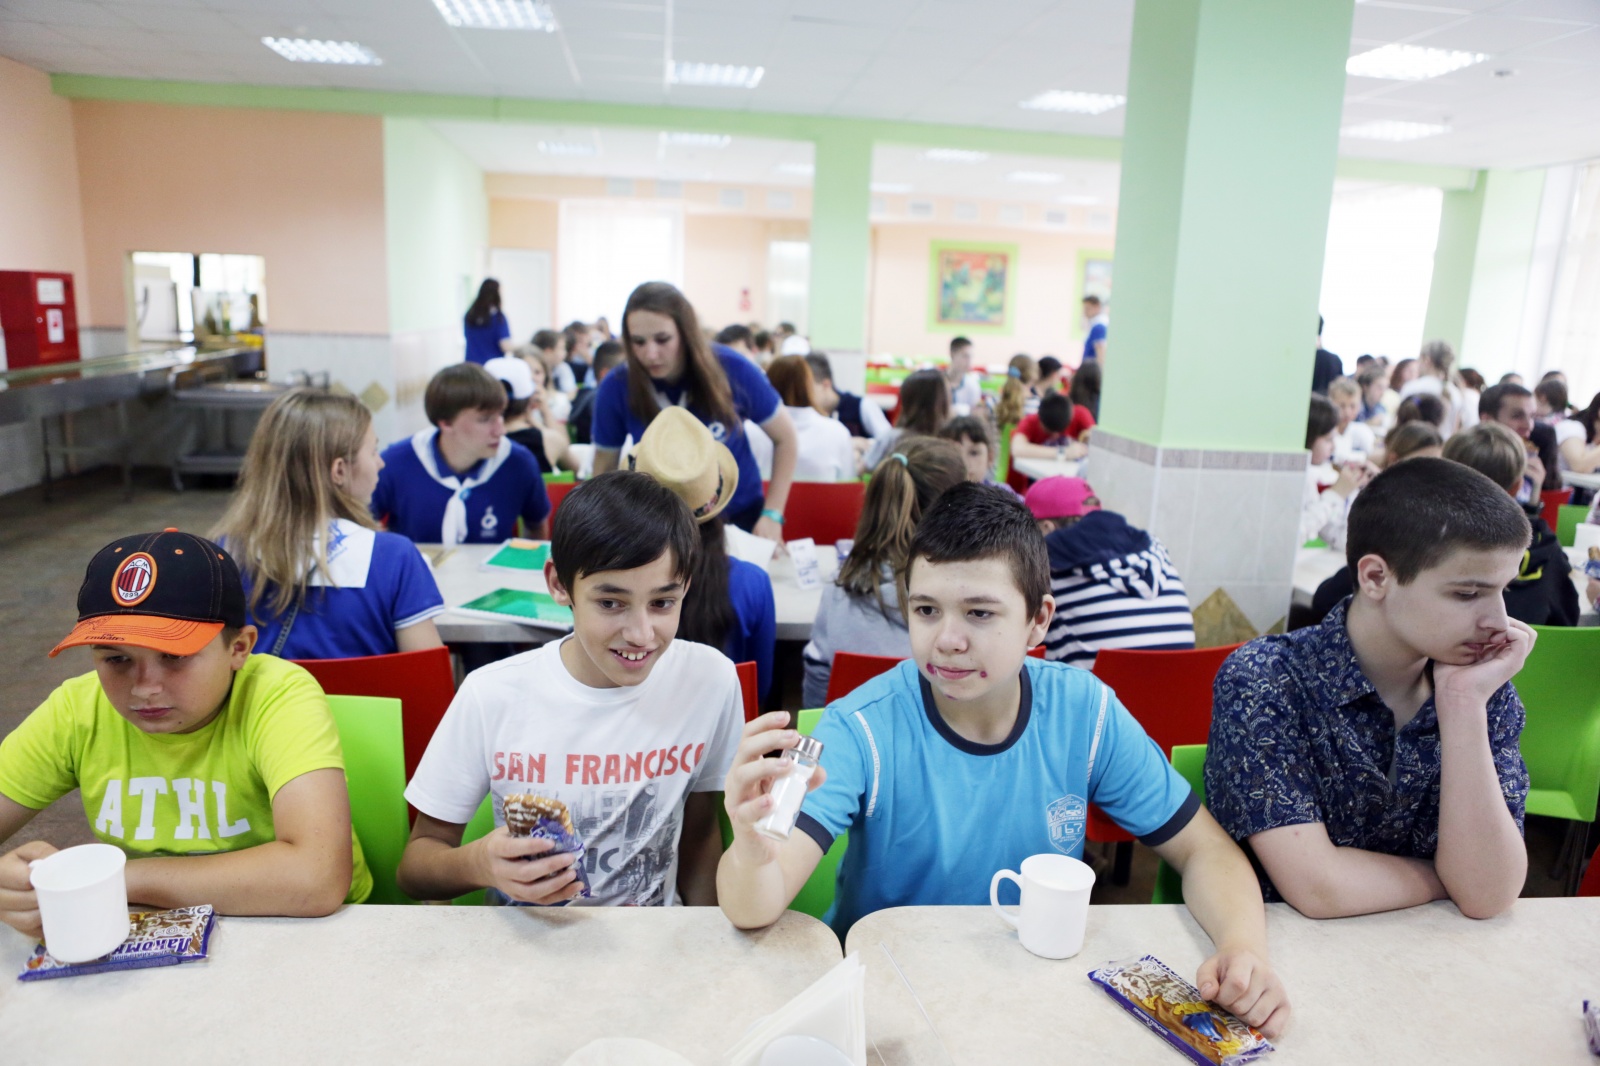 Устроить ребенка в школу в москве